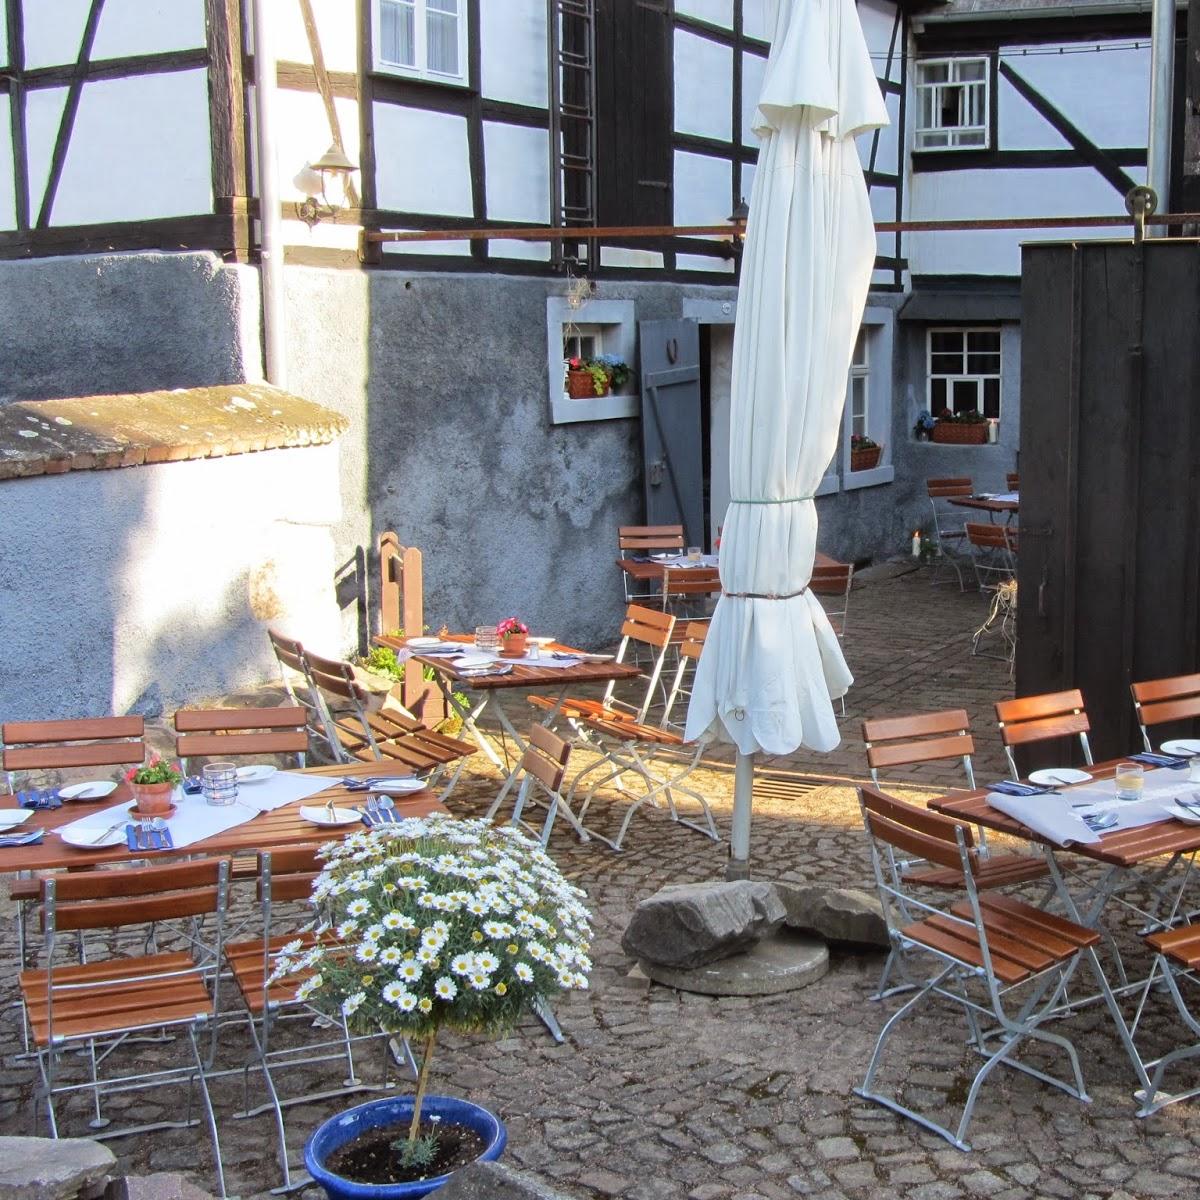 Restaurant "Schmiedelandhaus Greifendorf" in Rossau